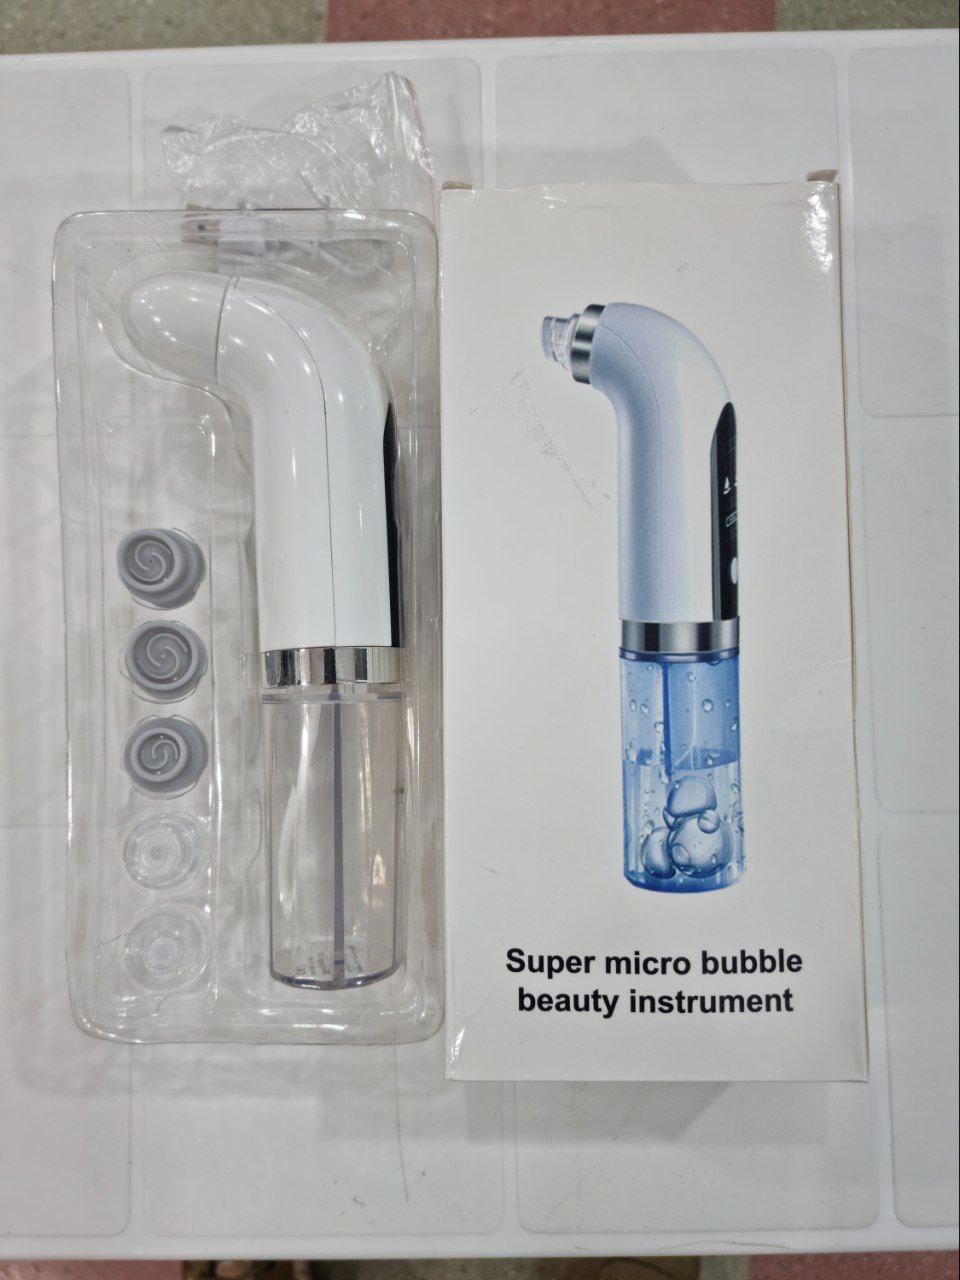 دستگاه میکرودرم آبریژن حبابی مدل super micro bubble beauty instrument